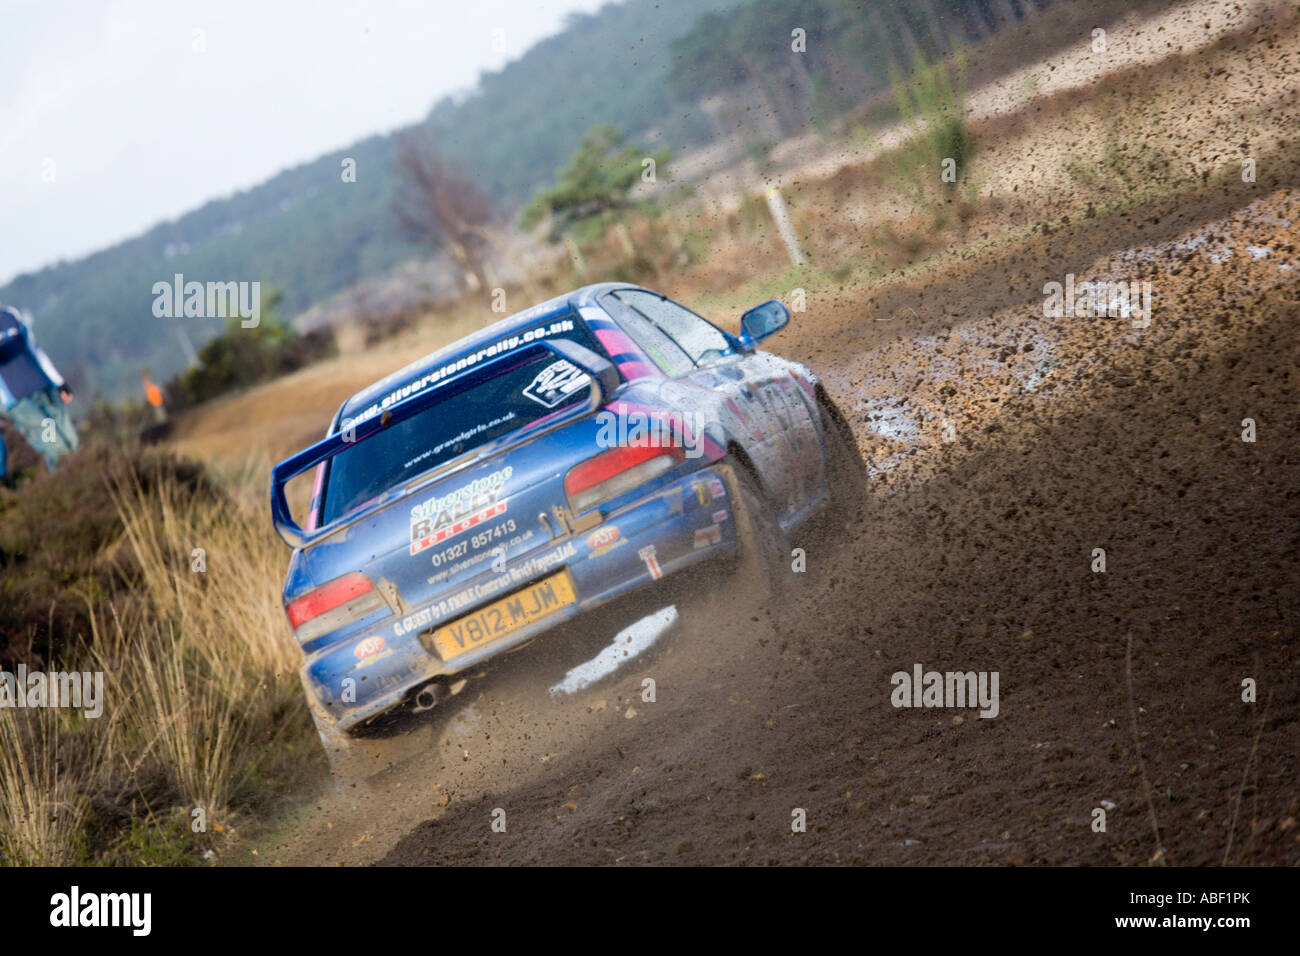 Blauen Subaru Impreza-Rallye-Auto fahren Aktion Spritzwasser durch Pfütze Spritzen Kies Steinen, Schmutz und Schlamm, wie sich herausstellt eine Ecke Stockfoto